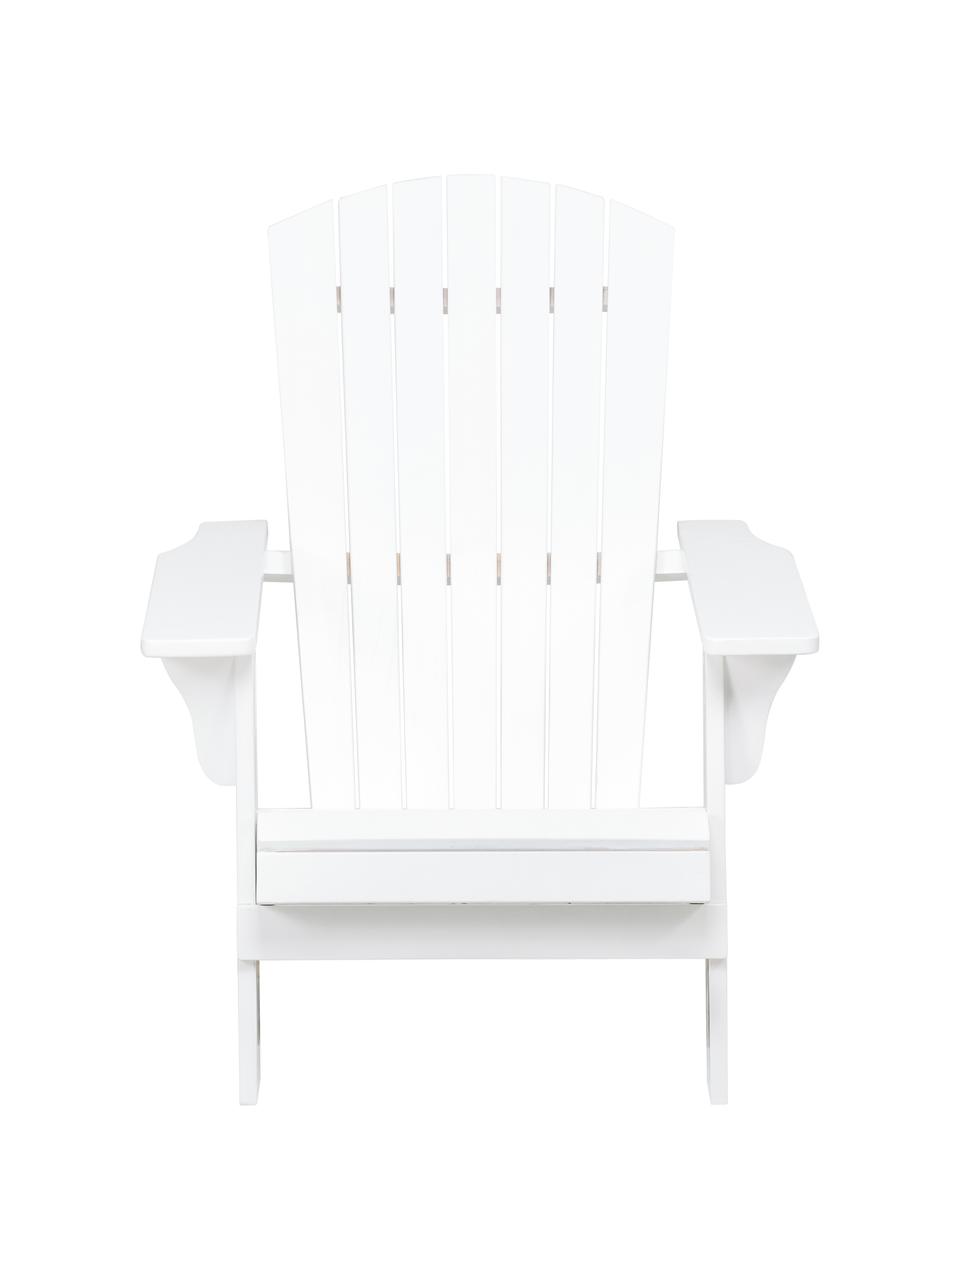 Garten-Loungestuhl Charlie aus Akazienholz in Weiß, Massives Akazienholz, geölt und lackiert, Weiß, B 93 x T 74 cm